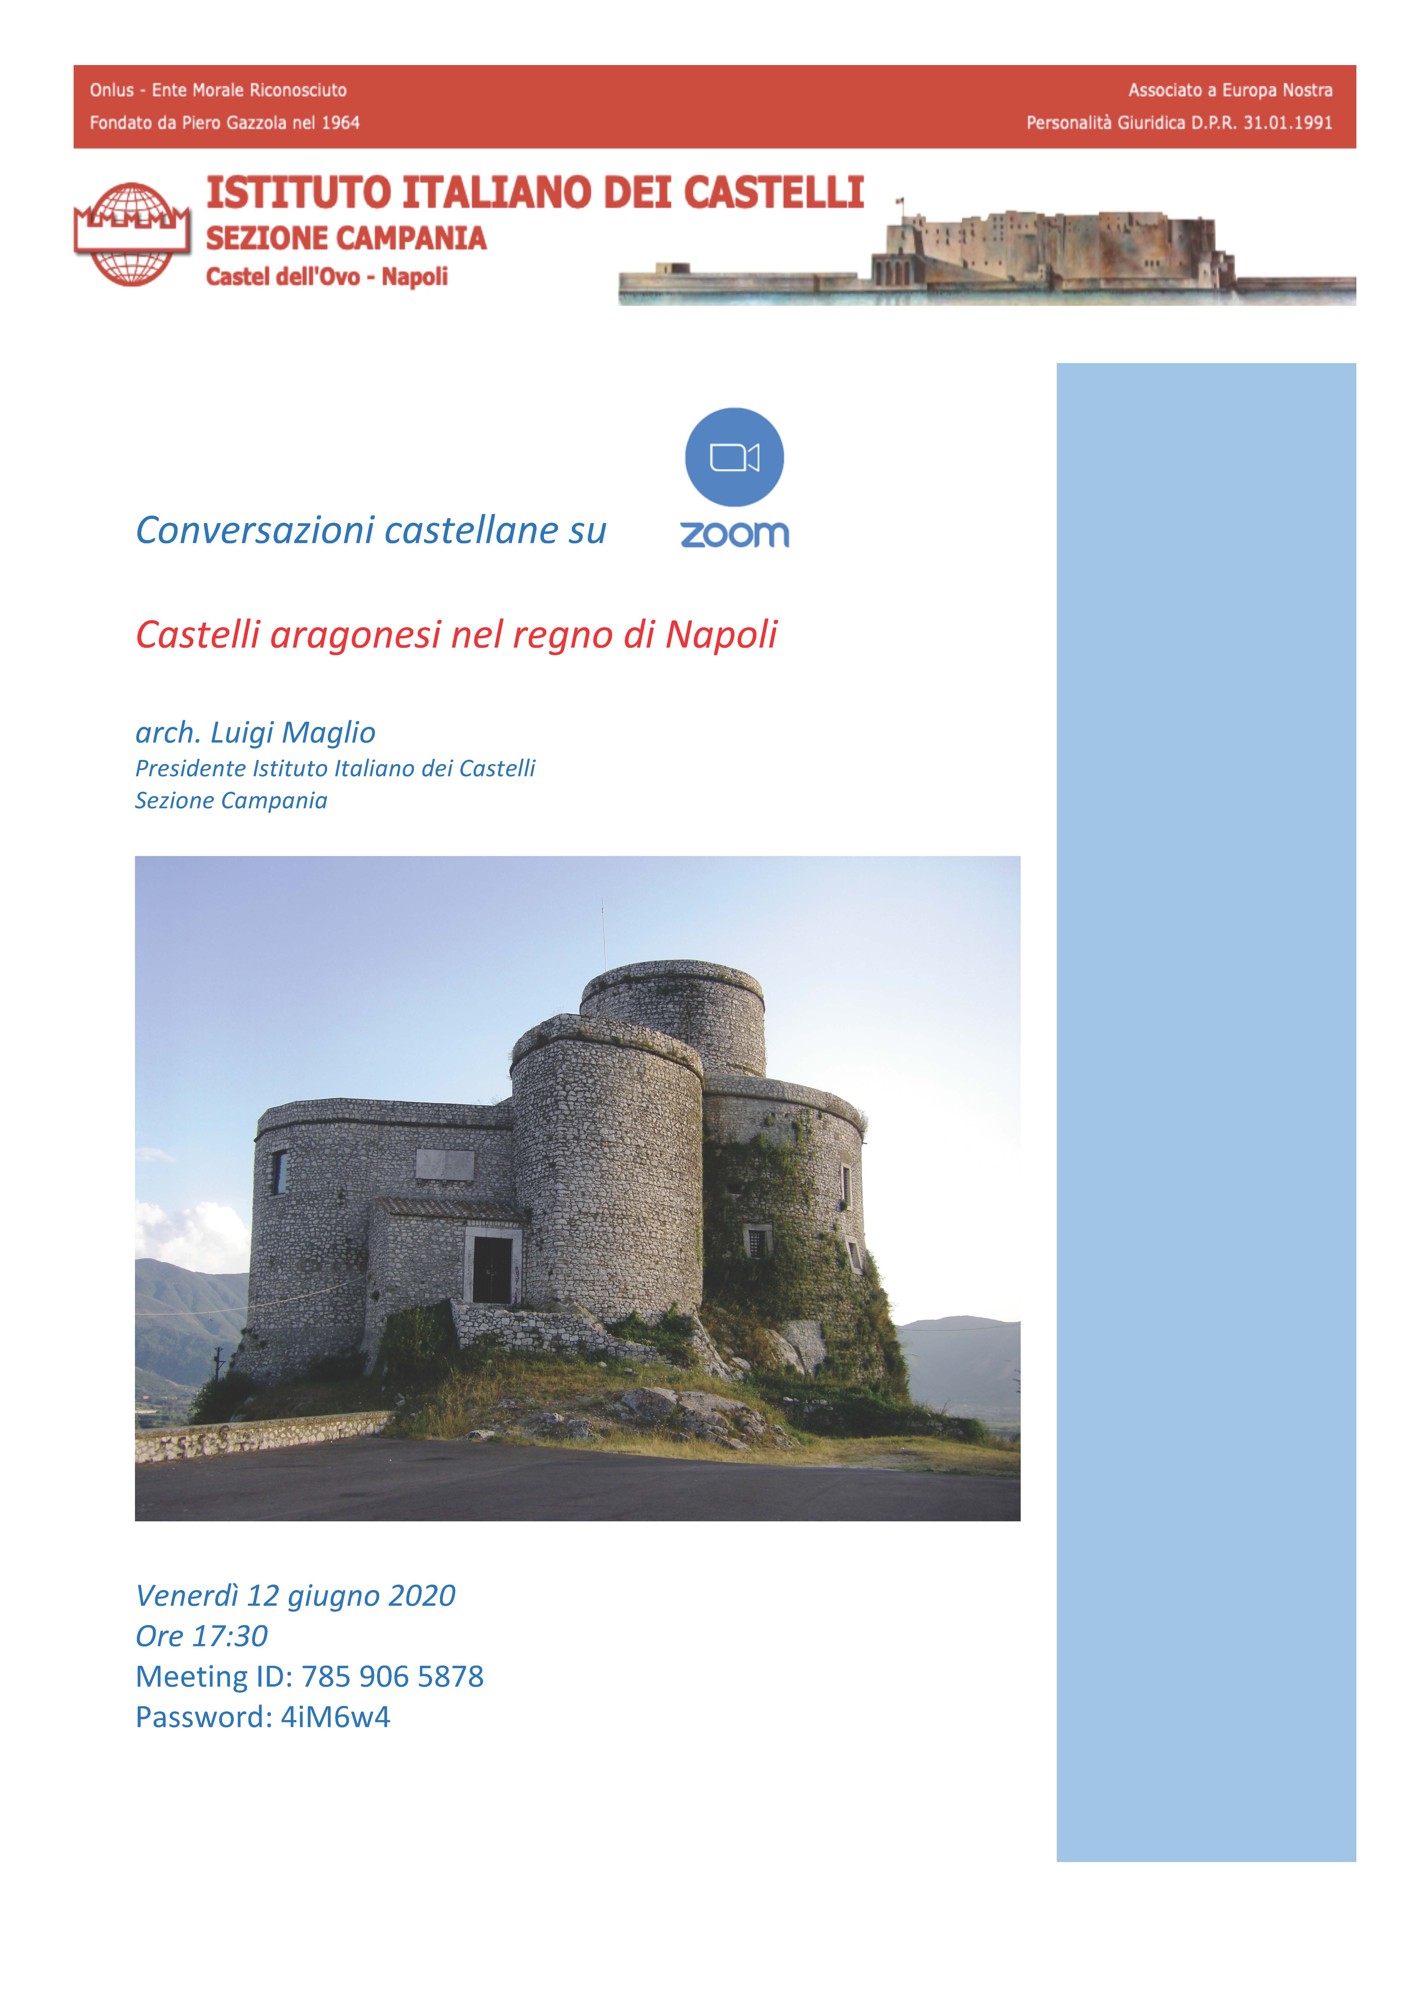 Sezione Campania – Conferenza Online “Castelli aragonesi nel regno di Napoli”